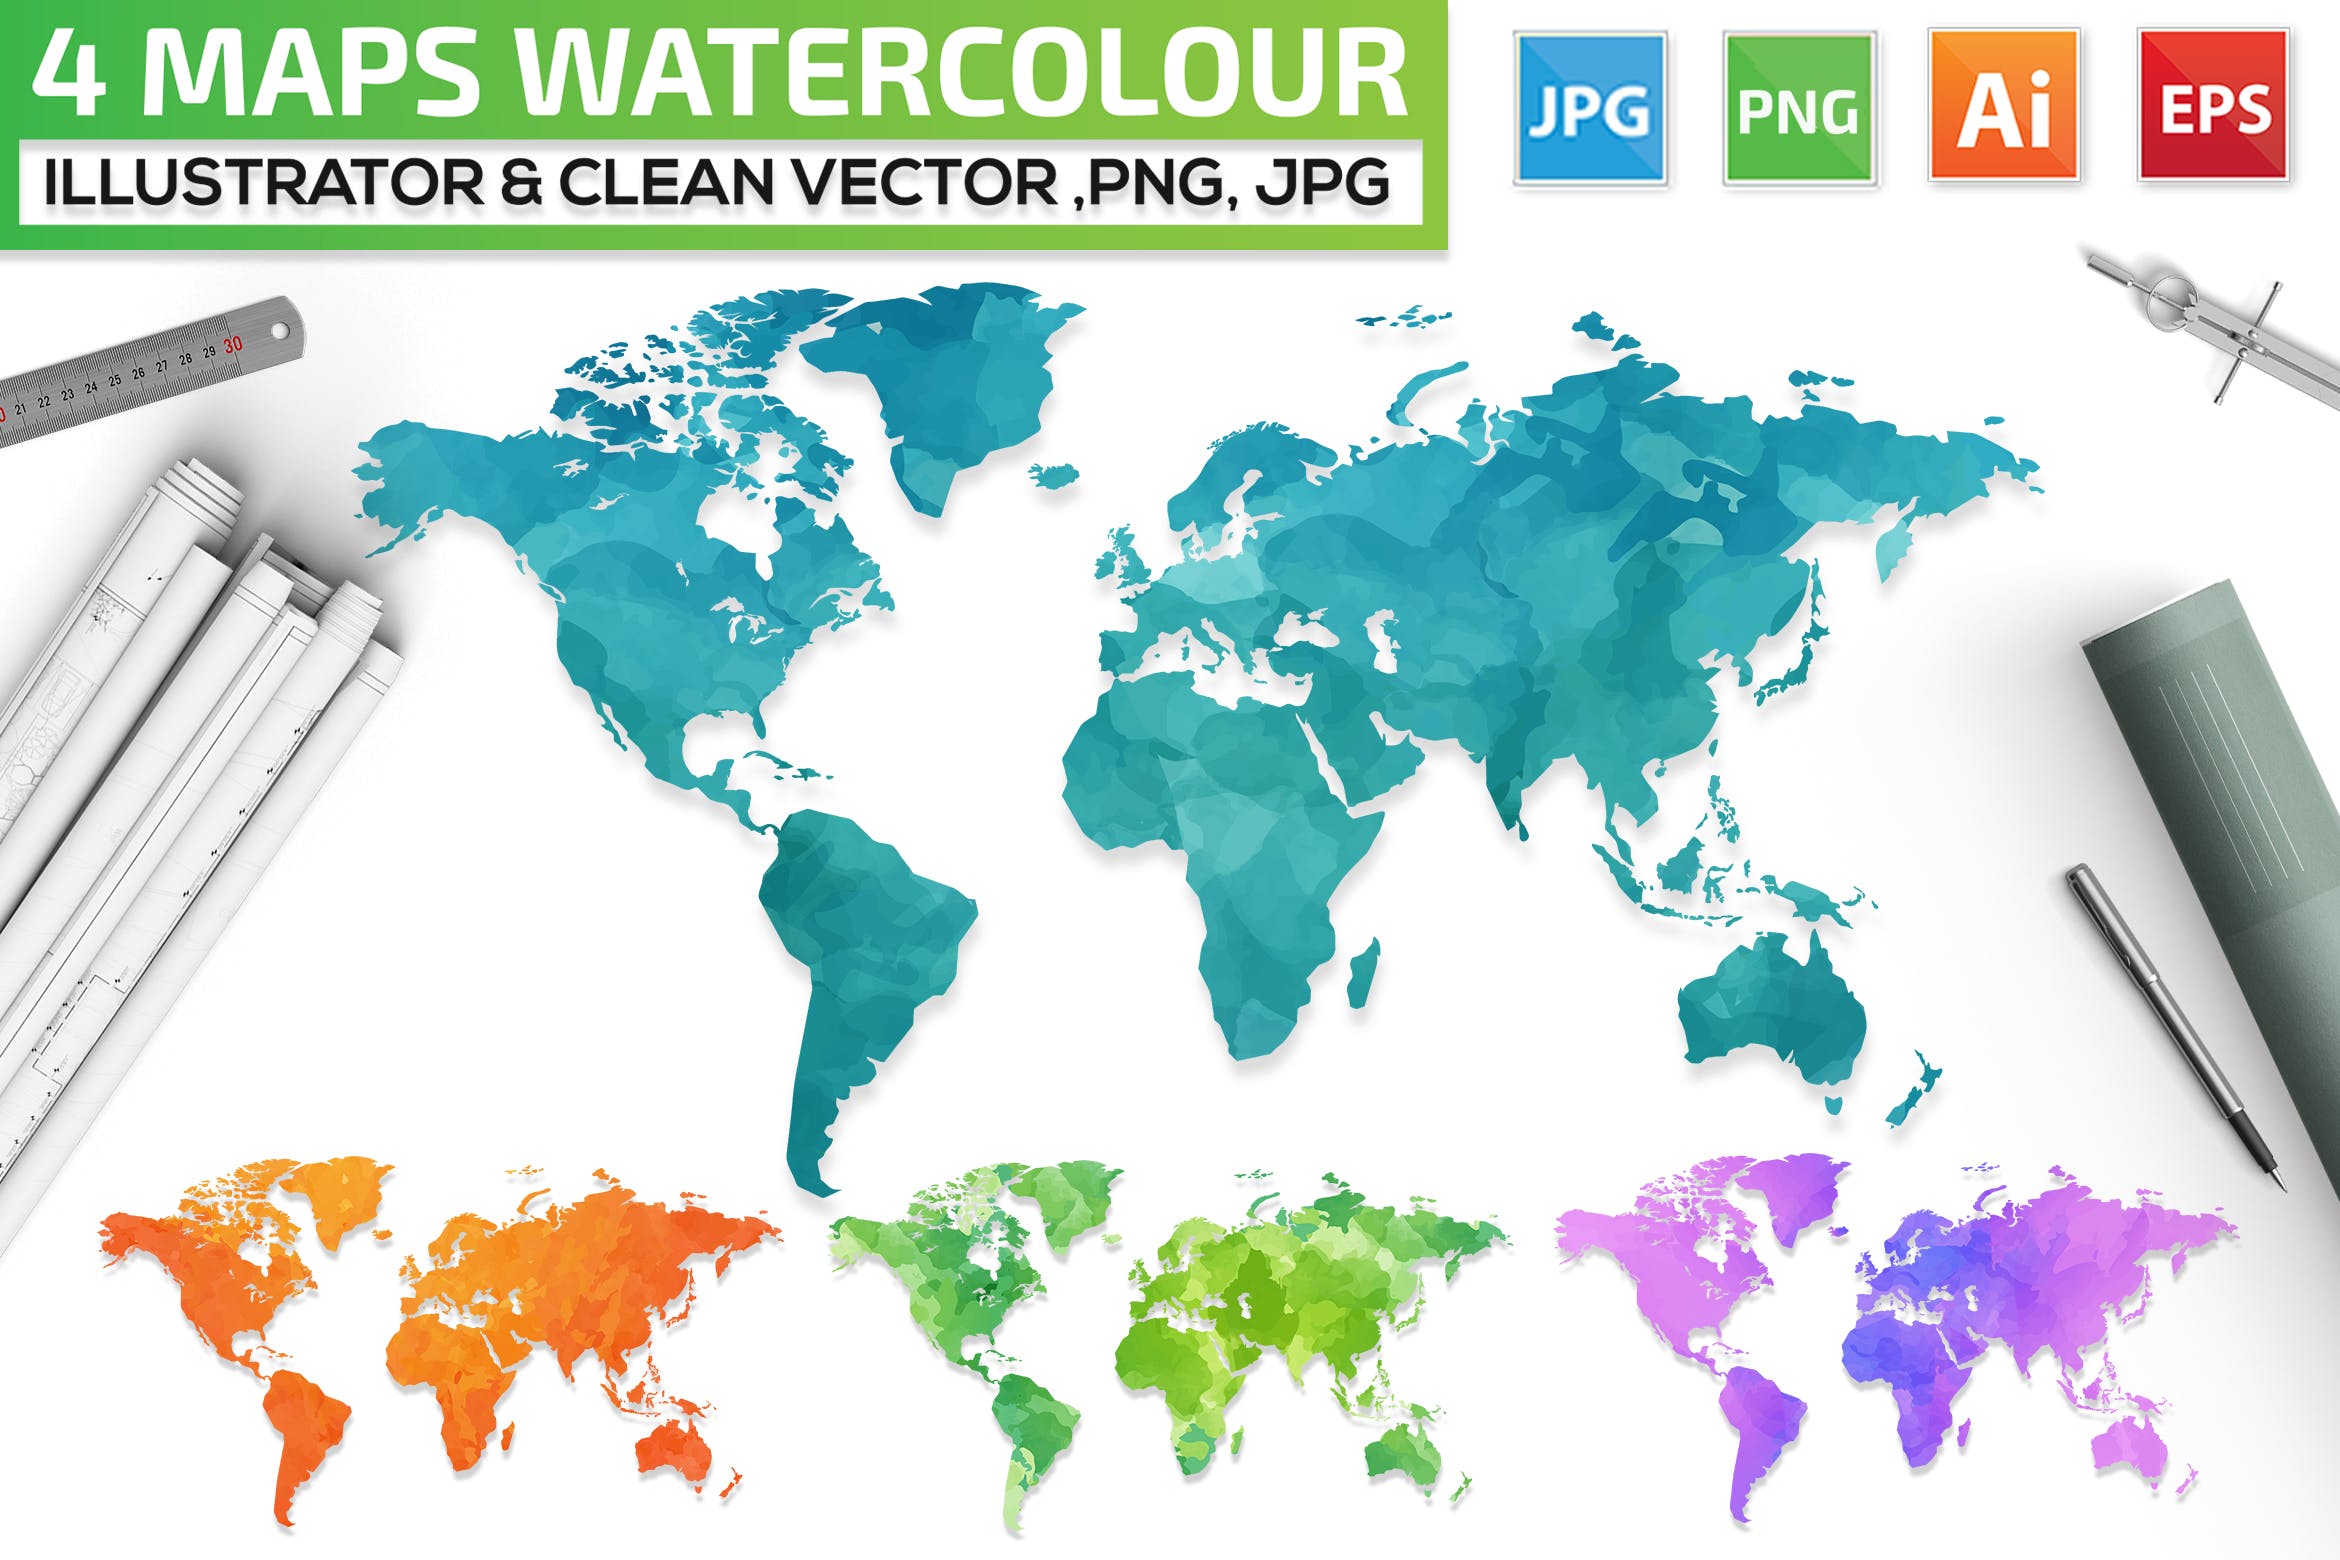 4款世界地图水彩手绘矢量图形素材 4 Maps Watercolour Design插图